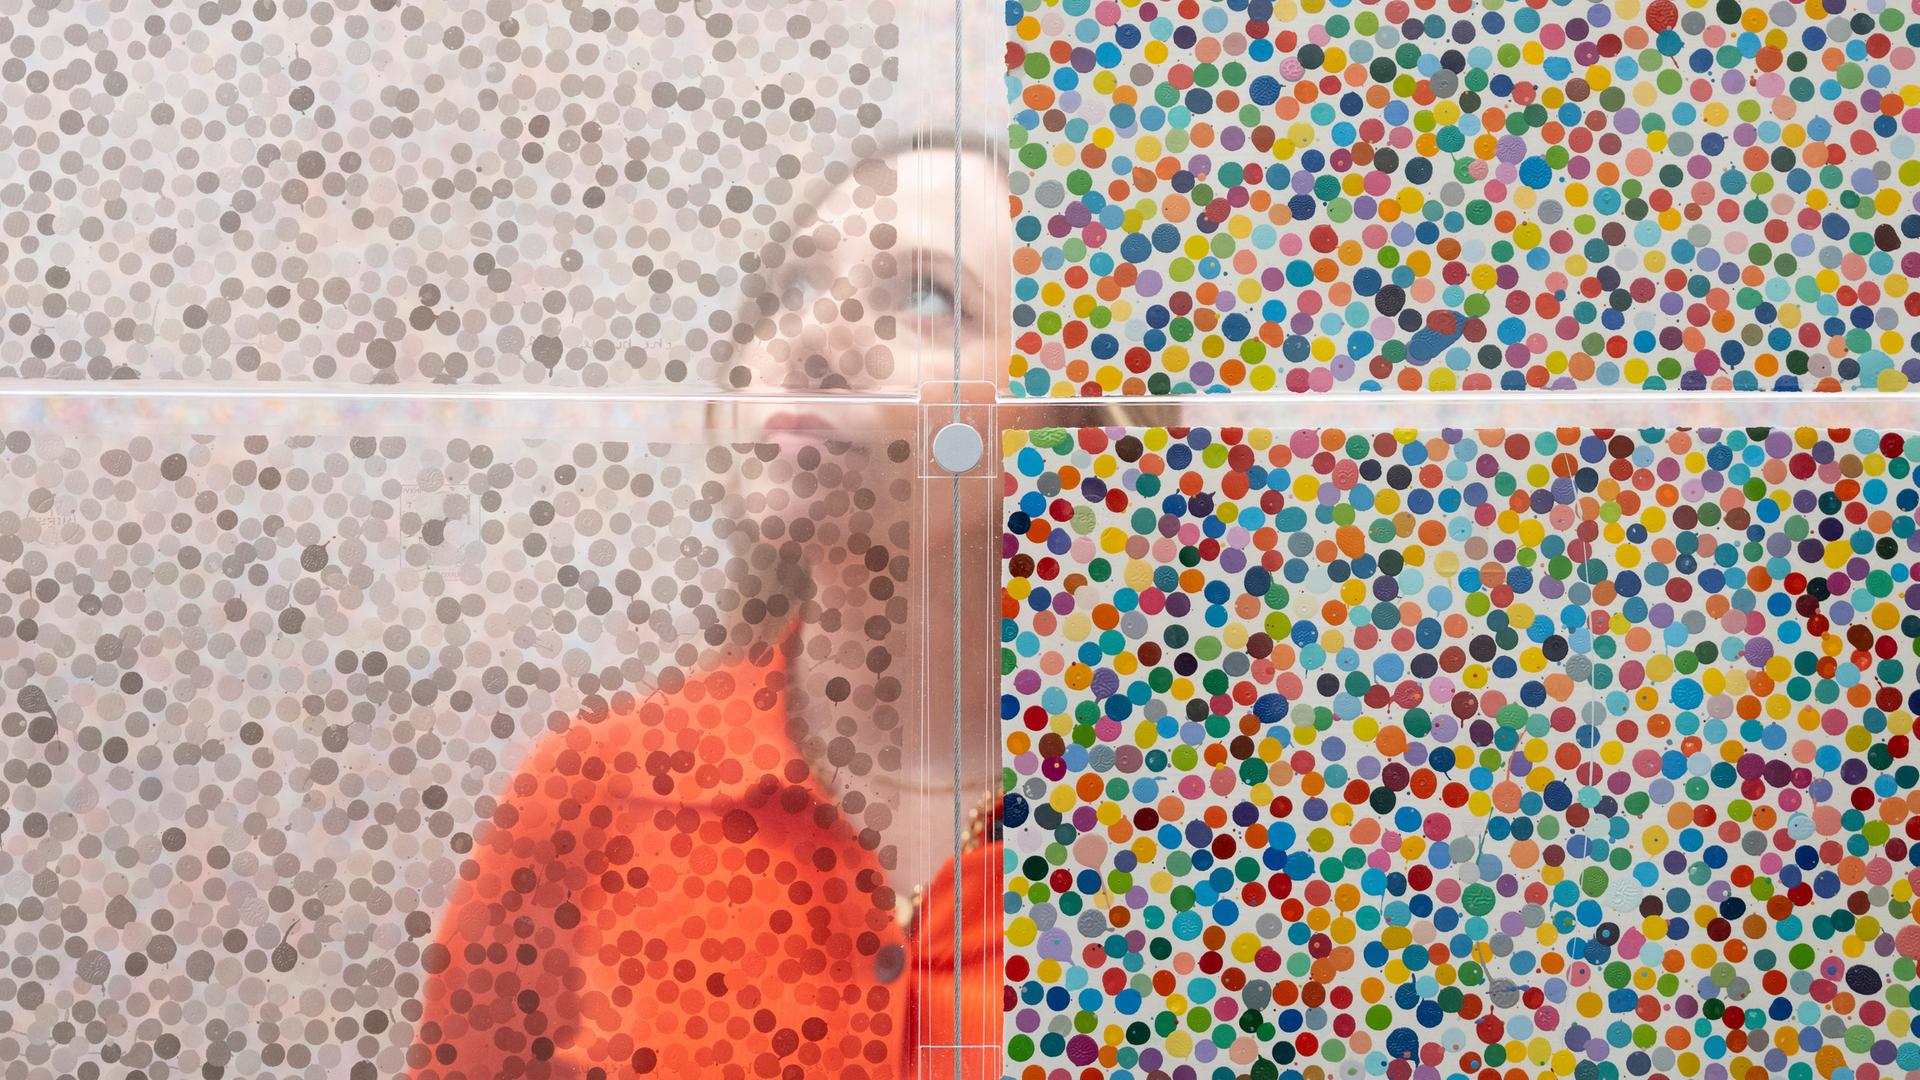 Bilder mit Punkten des britischen Künstlers Damien Hirst.  